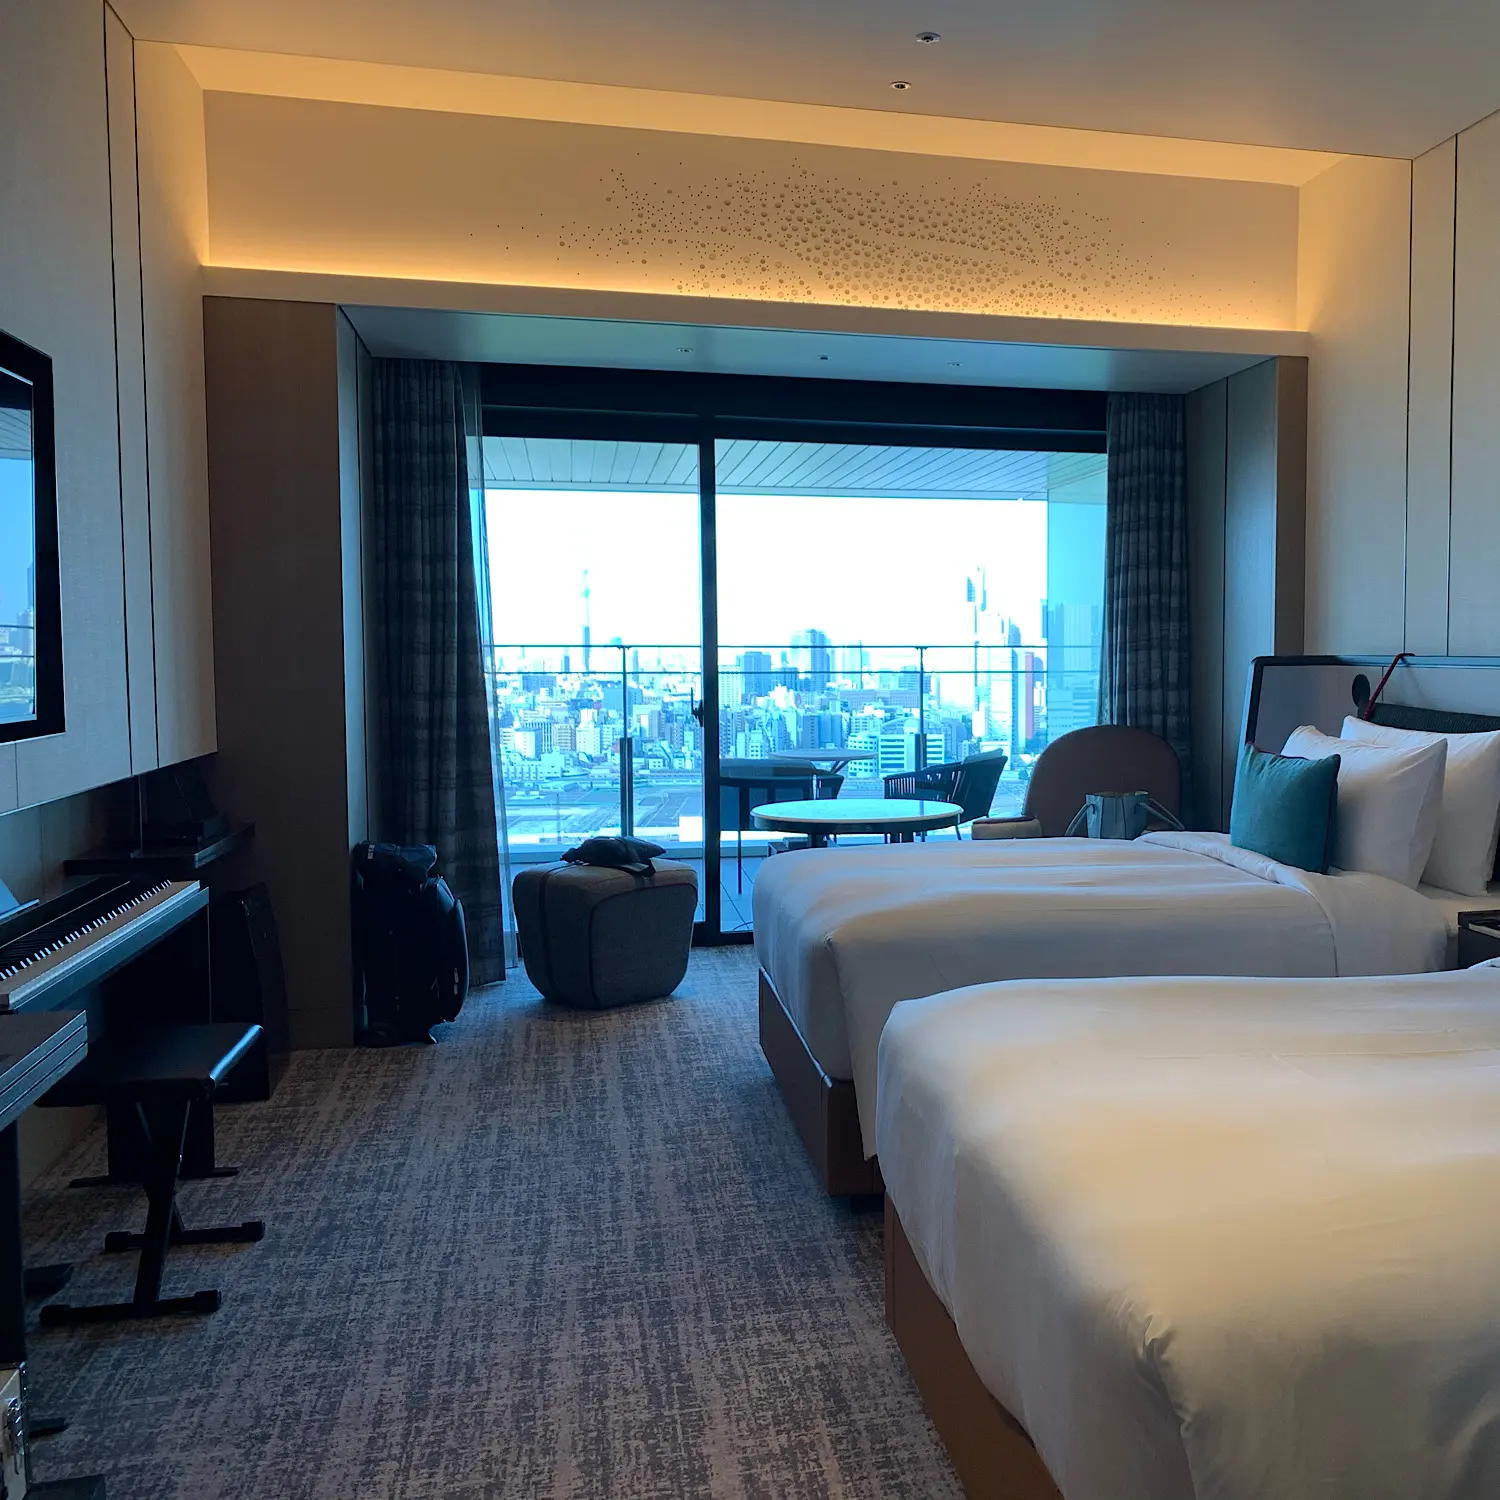 メズム東京 全客室にピアノ コーヒーが備わる高級ホテルが凄い Moreインフルエンサーズブログ Daily More